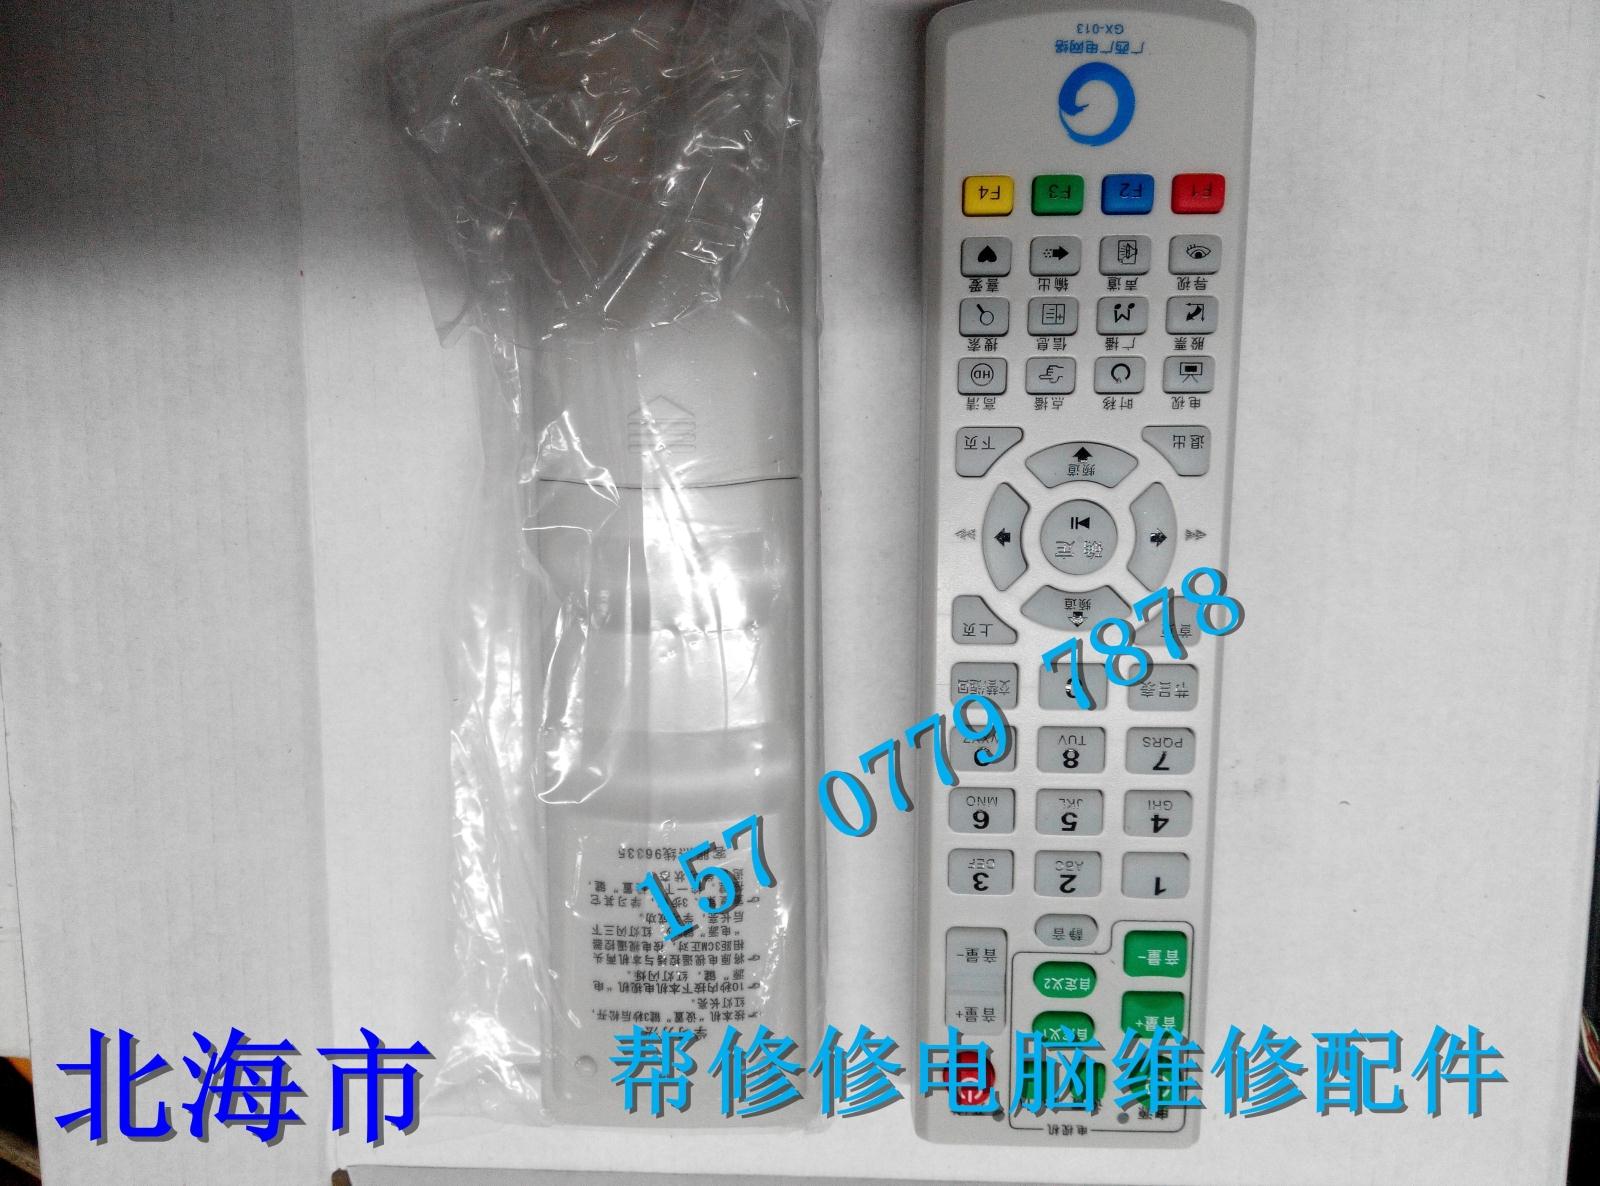 高清机顶盒广西广电网络GX-013广西广电网络机顶盒遥控器